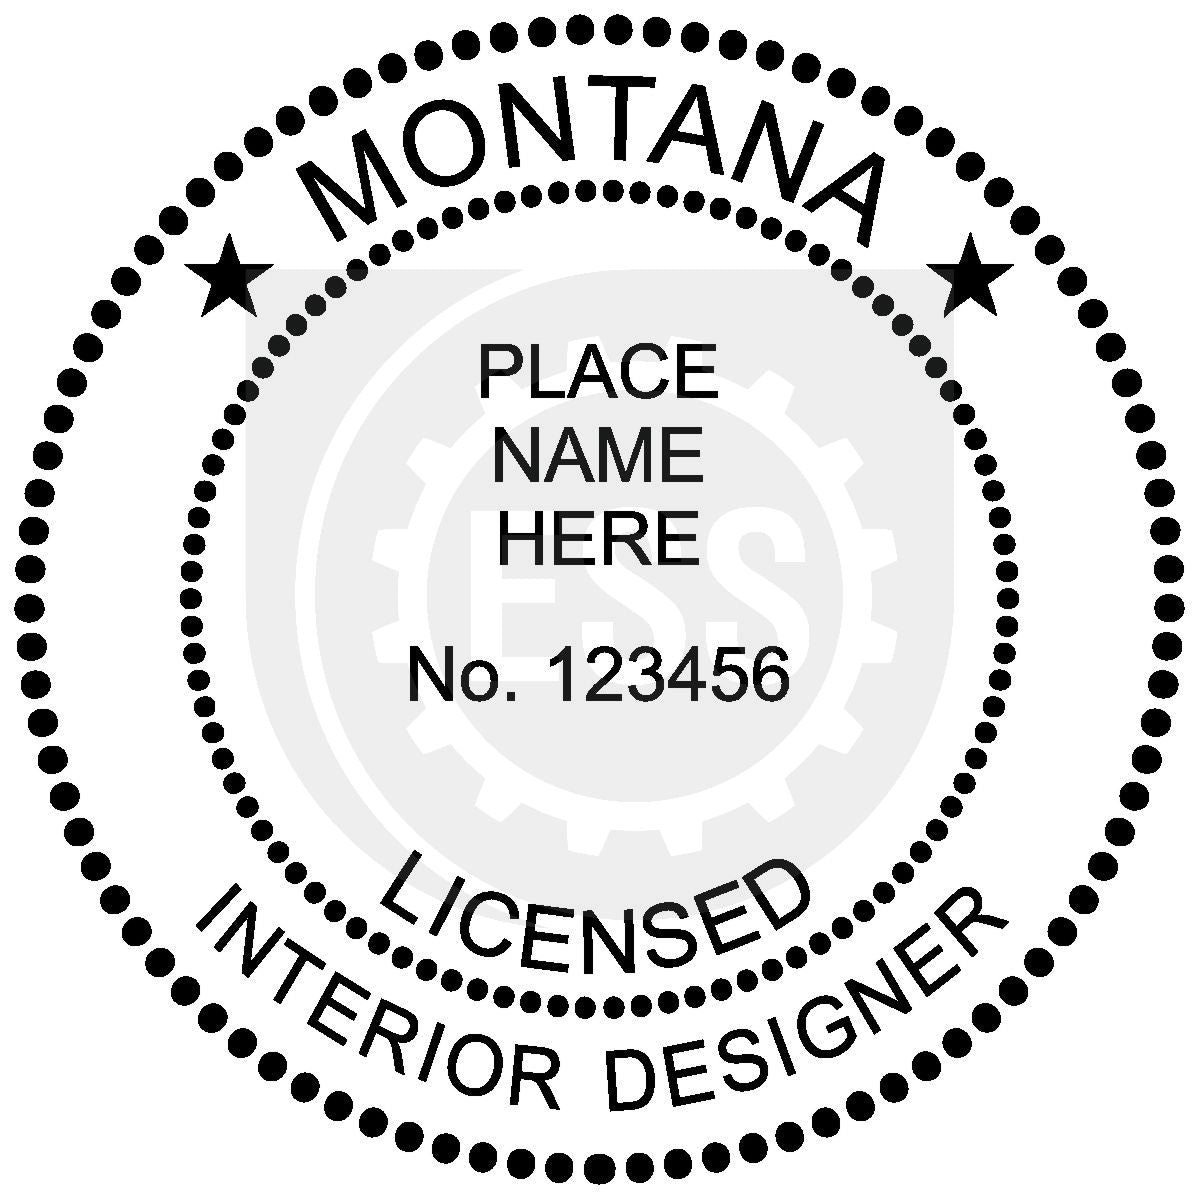 Montana Interior Designer Seal Setup